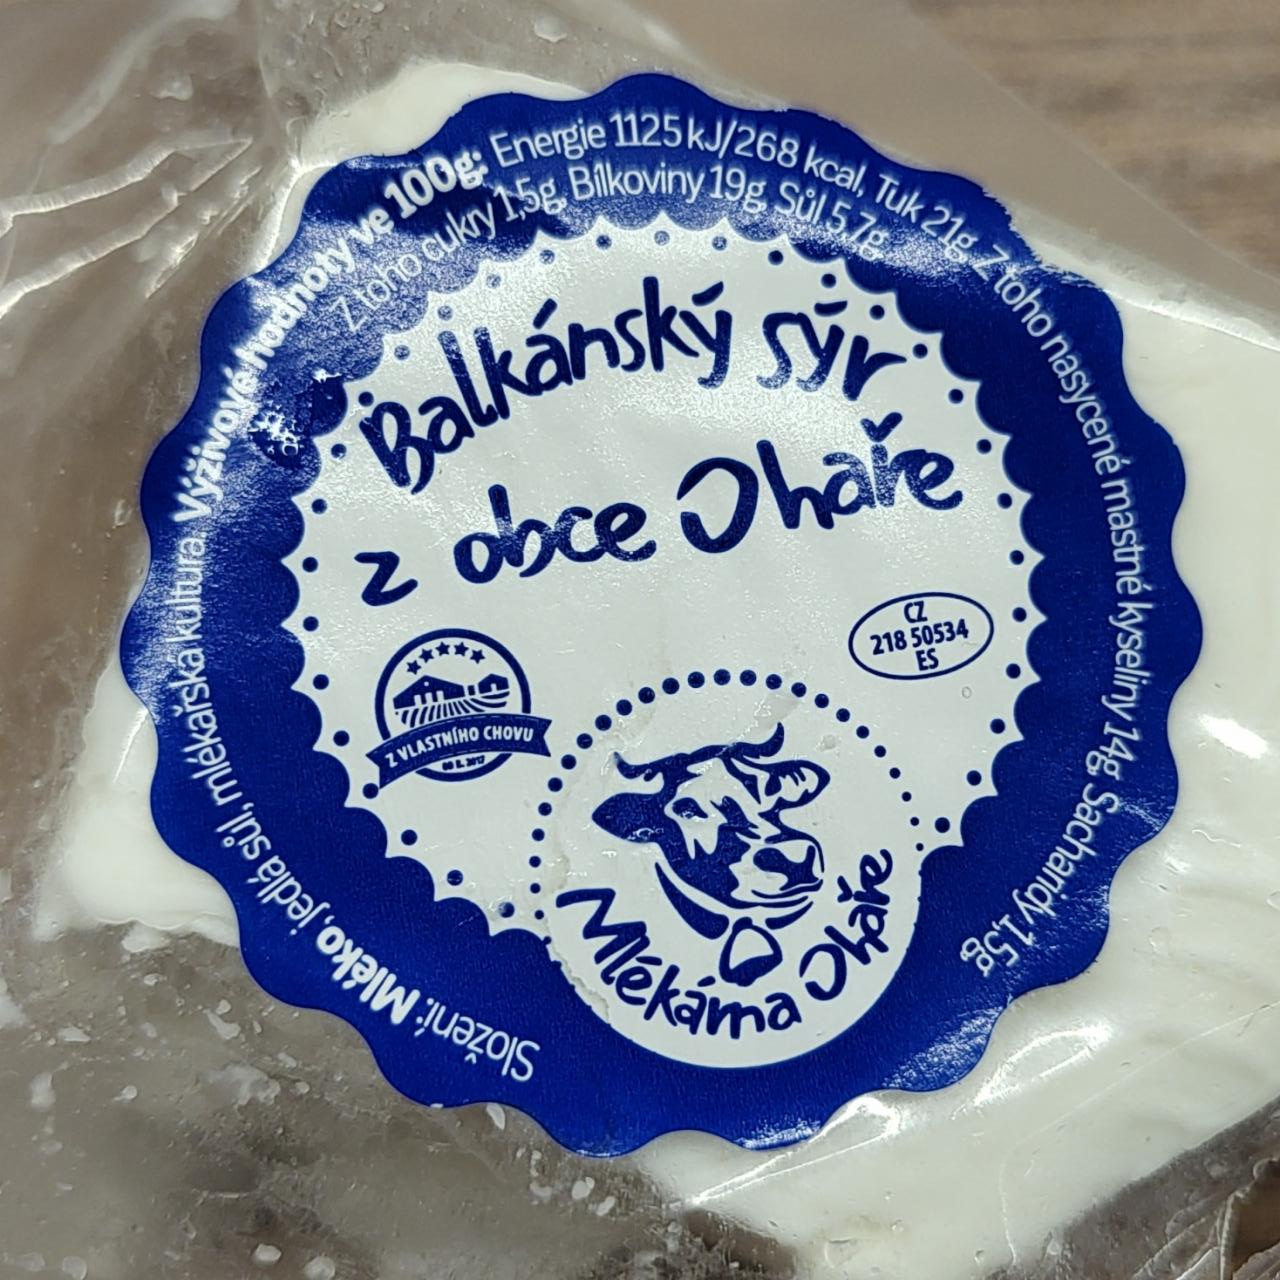 Fotografie - Balkánský sýr z obce Ohaře